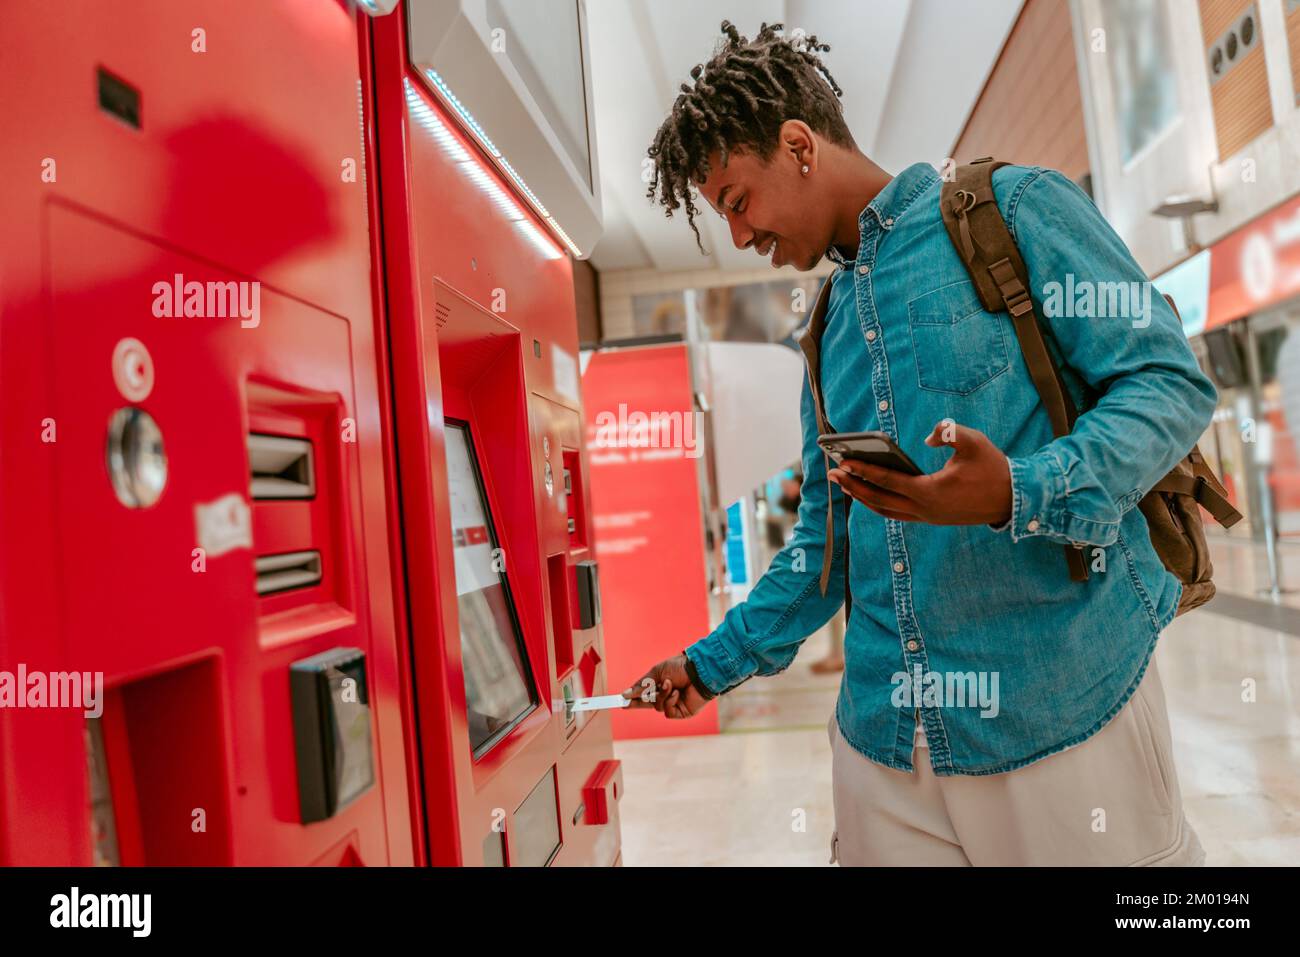 Kartenzahlung. Lächelnder afroamerikanischer Typ mit Smartphone und Rucksack, der die Karte in das Selbstbedienungs-Terminal am Bahnhof einsteckt. Stockfoto